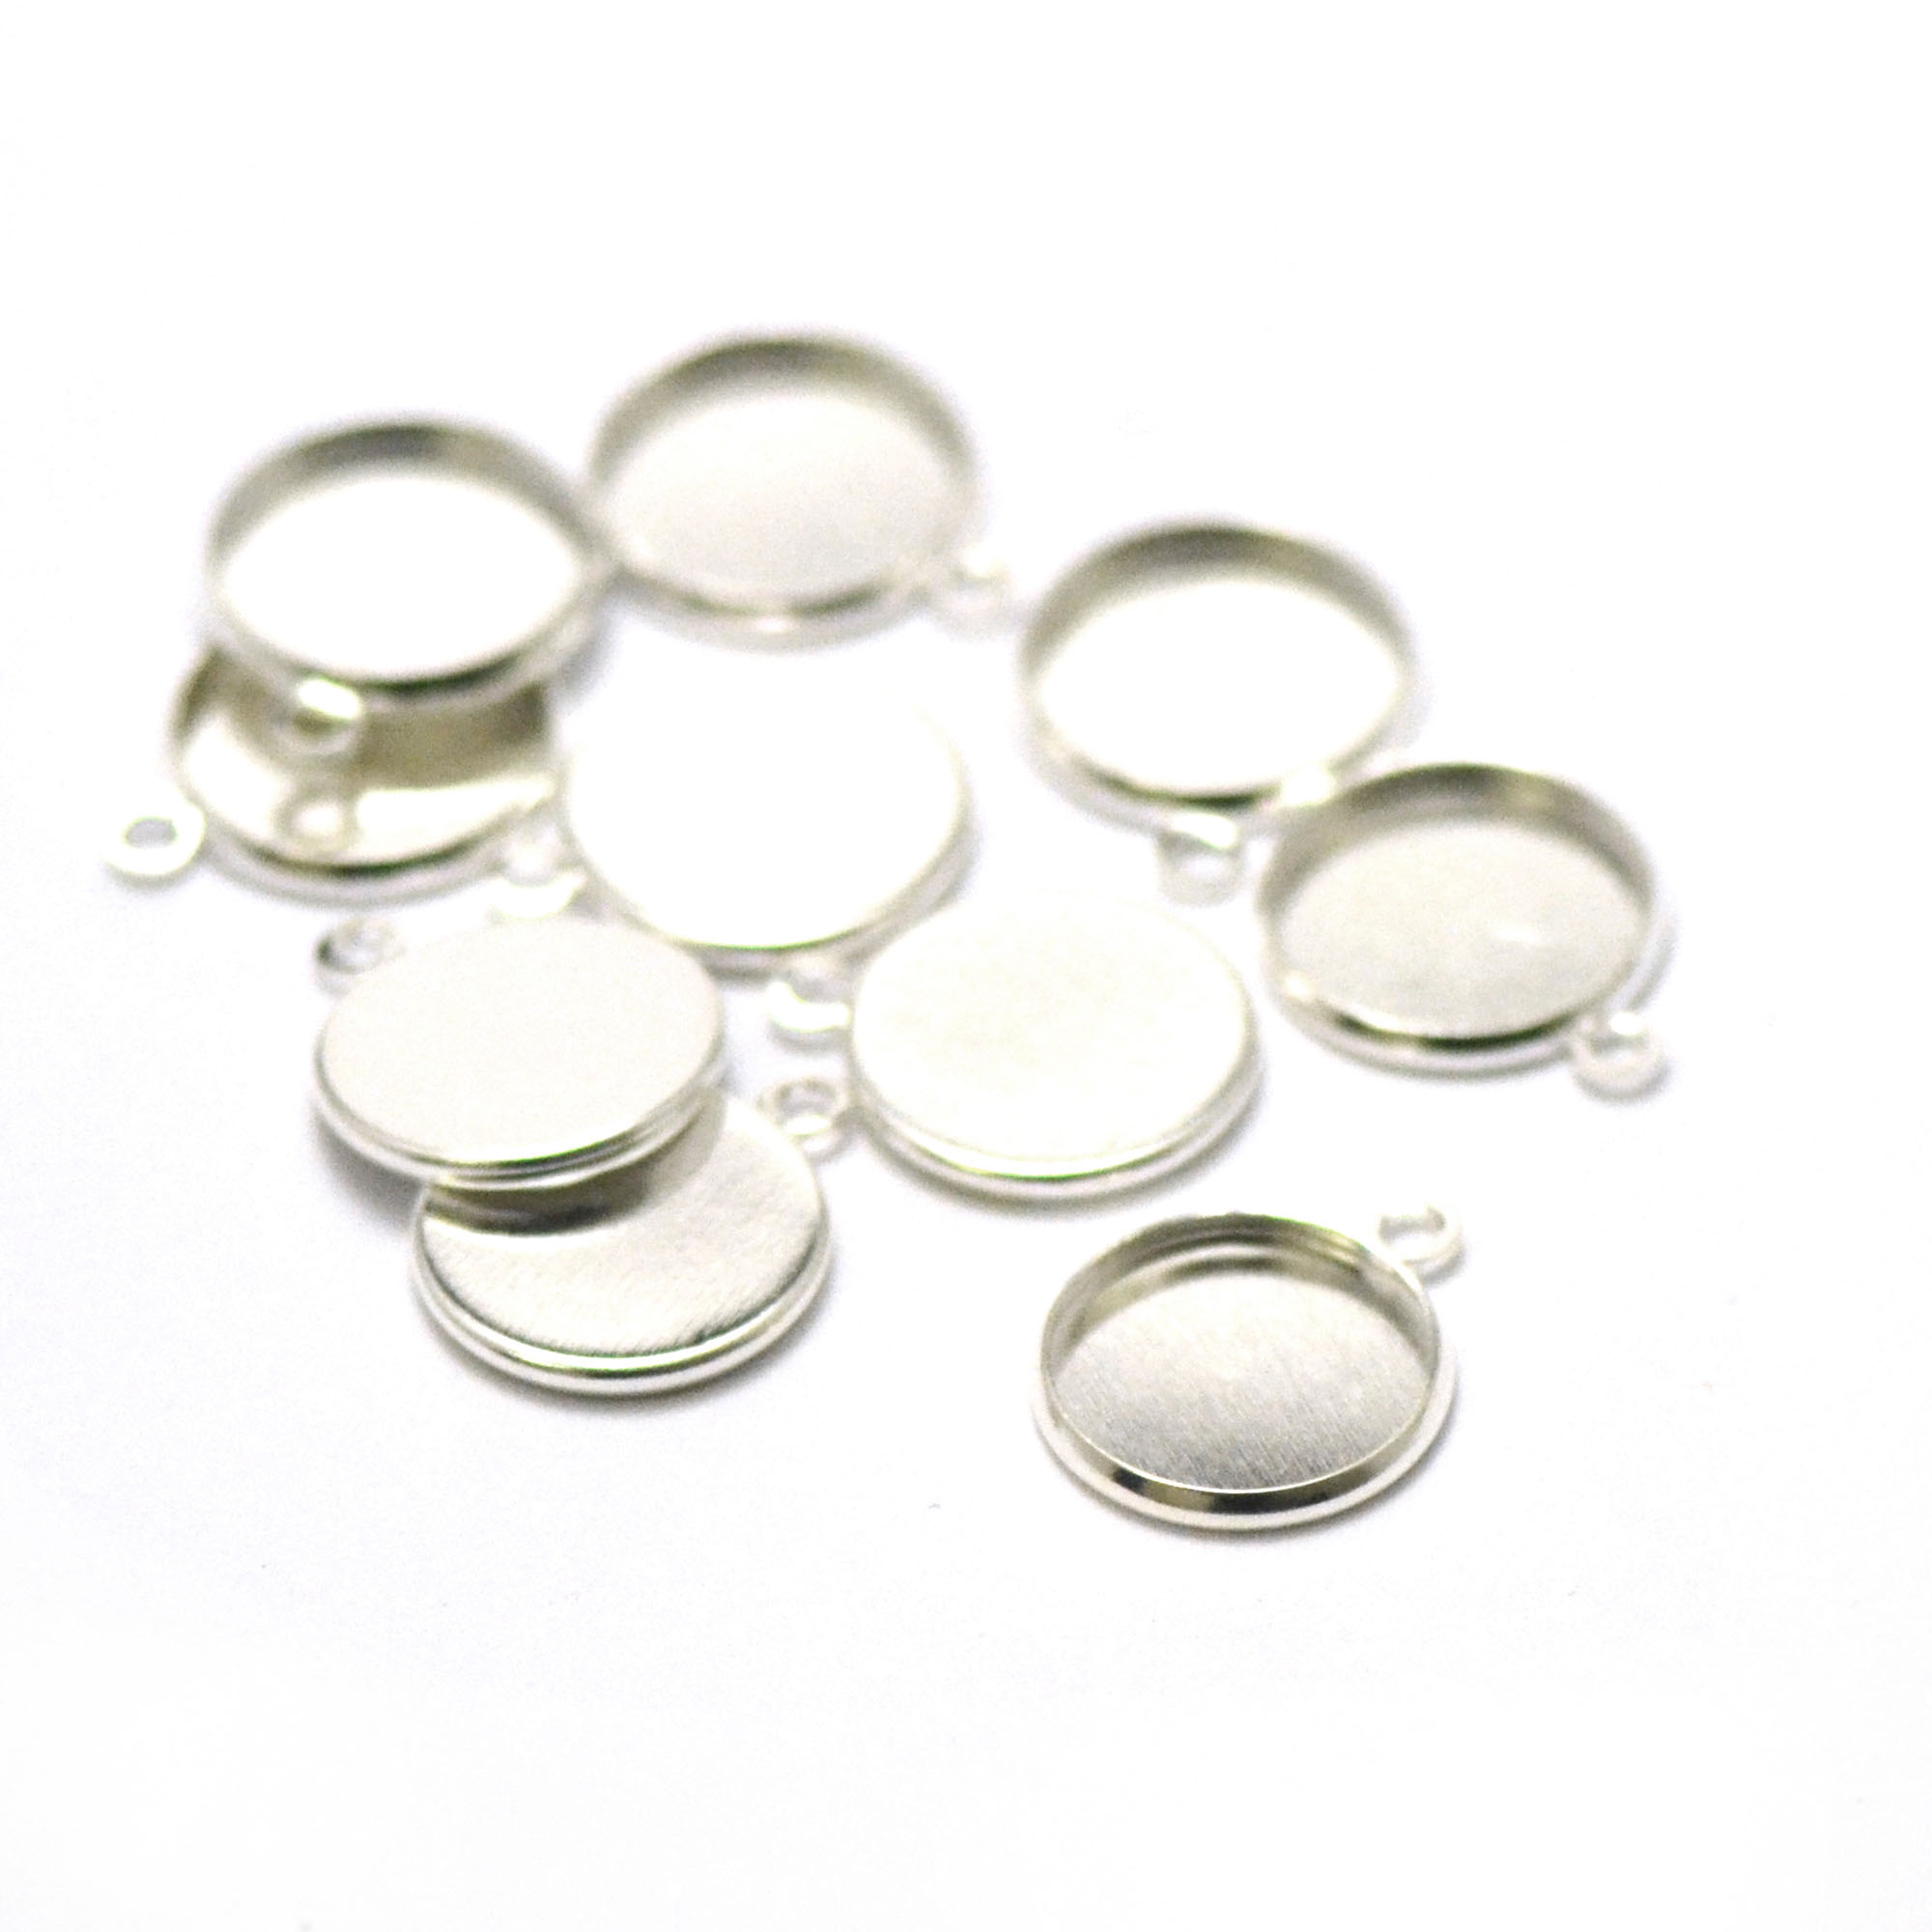 10 supports cabochon pendentif ronde 14 mm, argenté clair